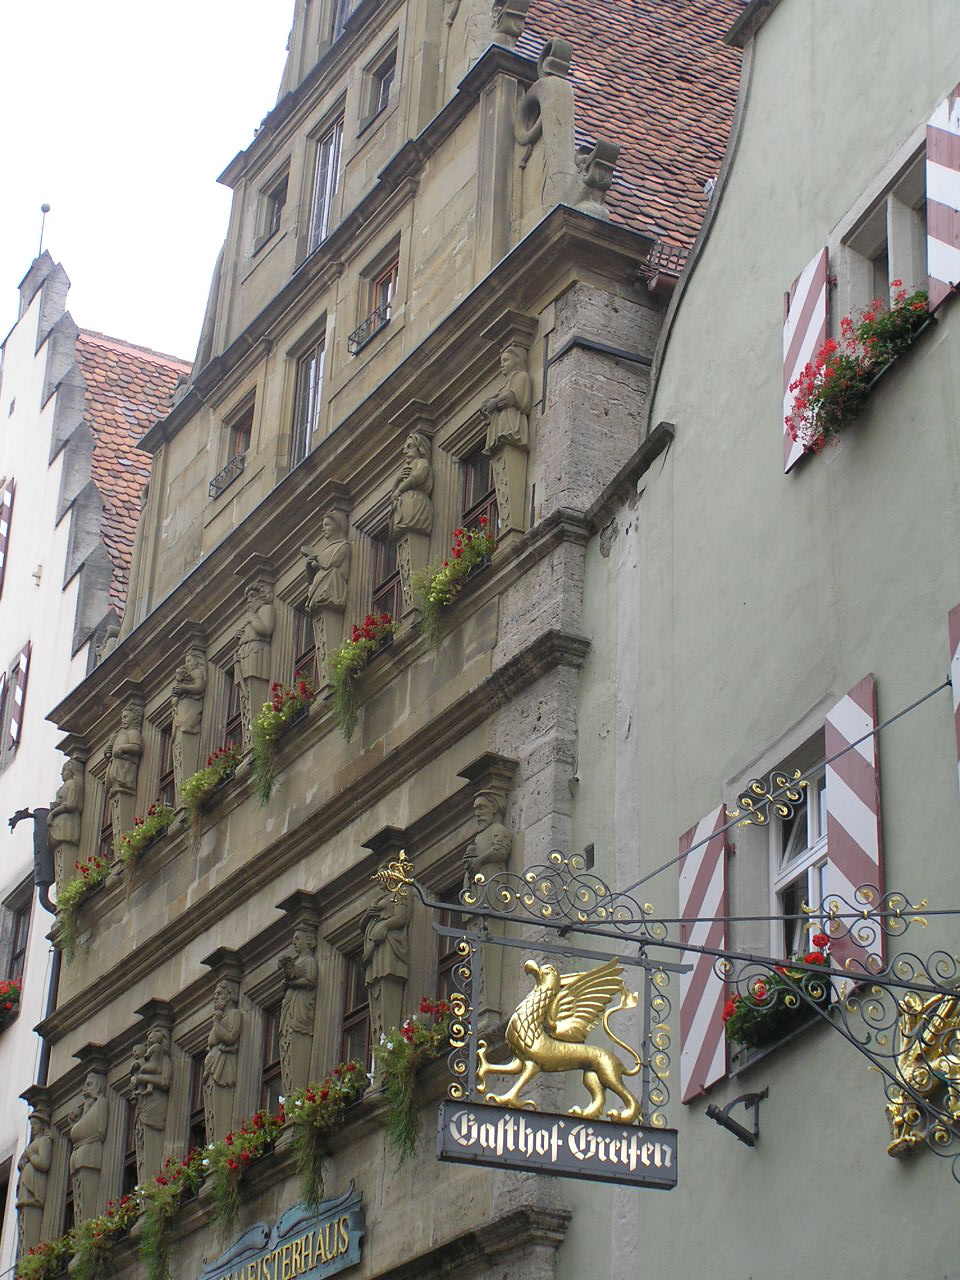 512 Rothenburg Építőmesterek háza